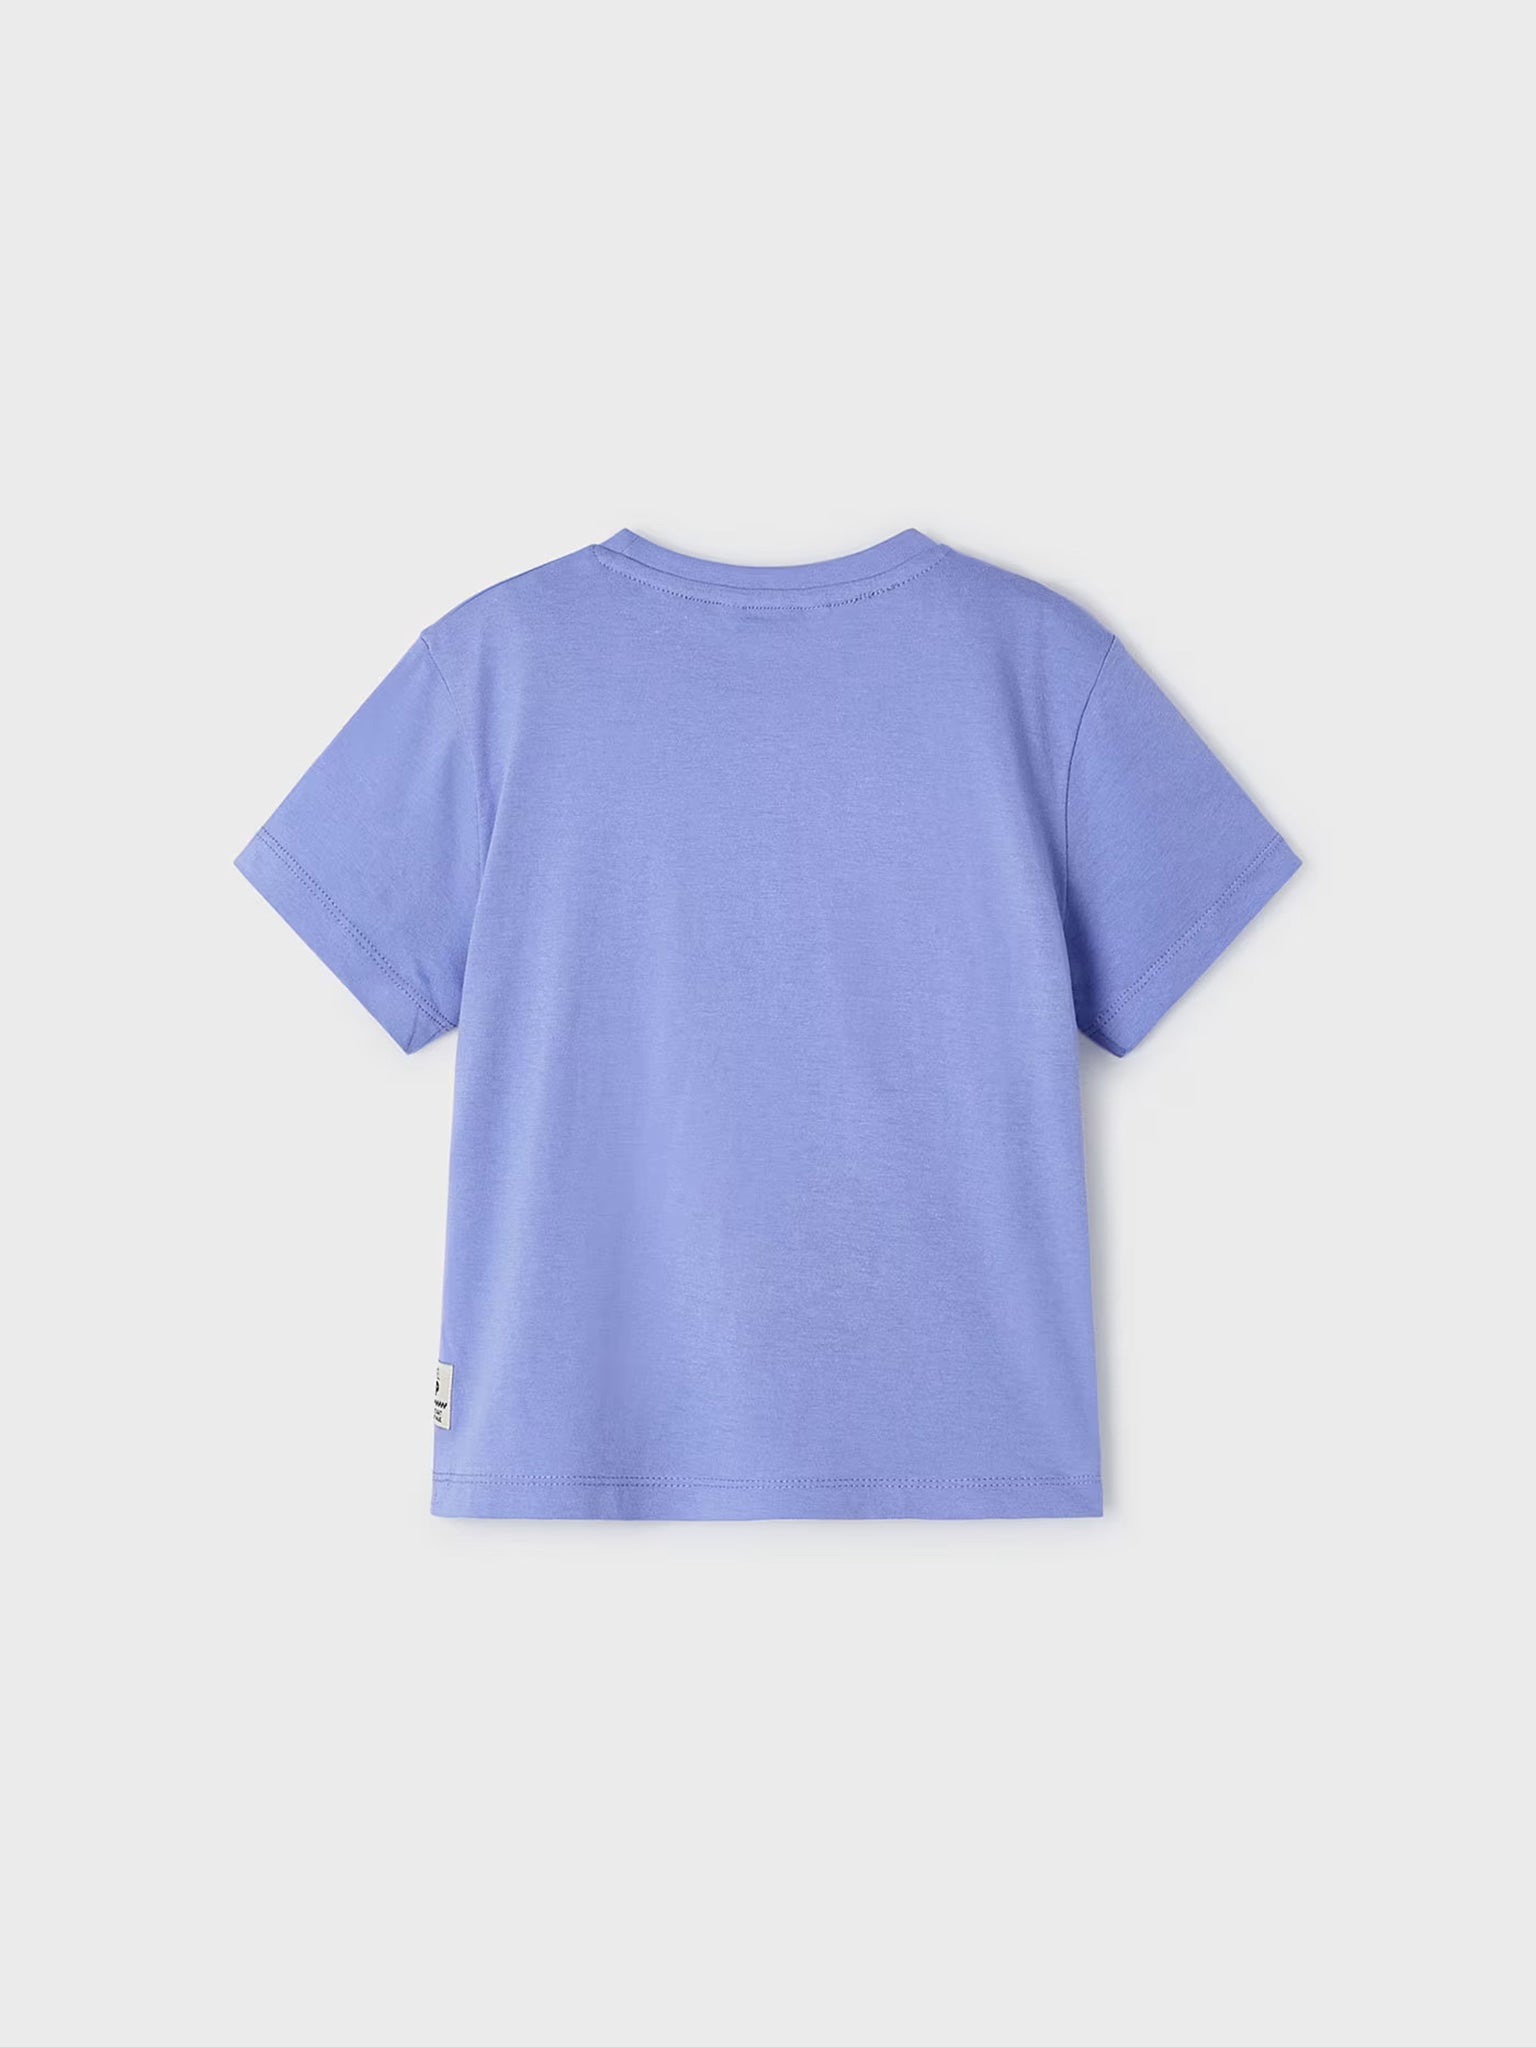 Παιδική μπλούζα σταμπωτή Better Cotton 24-03016-016 | 24-03016-016